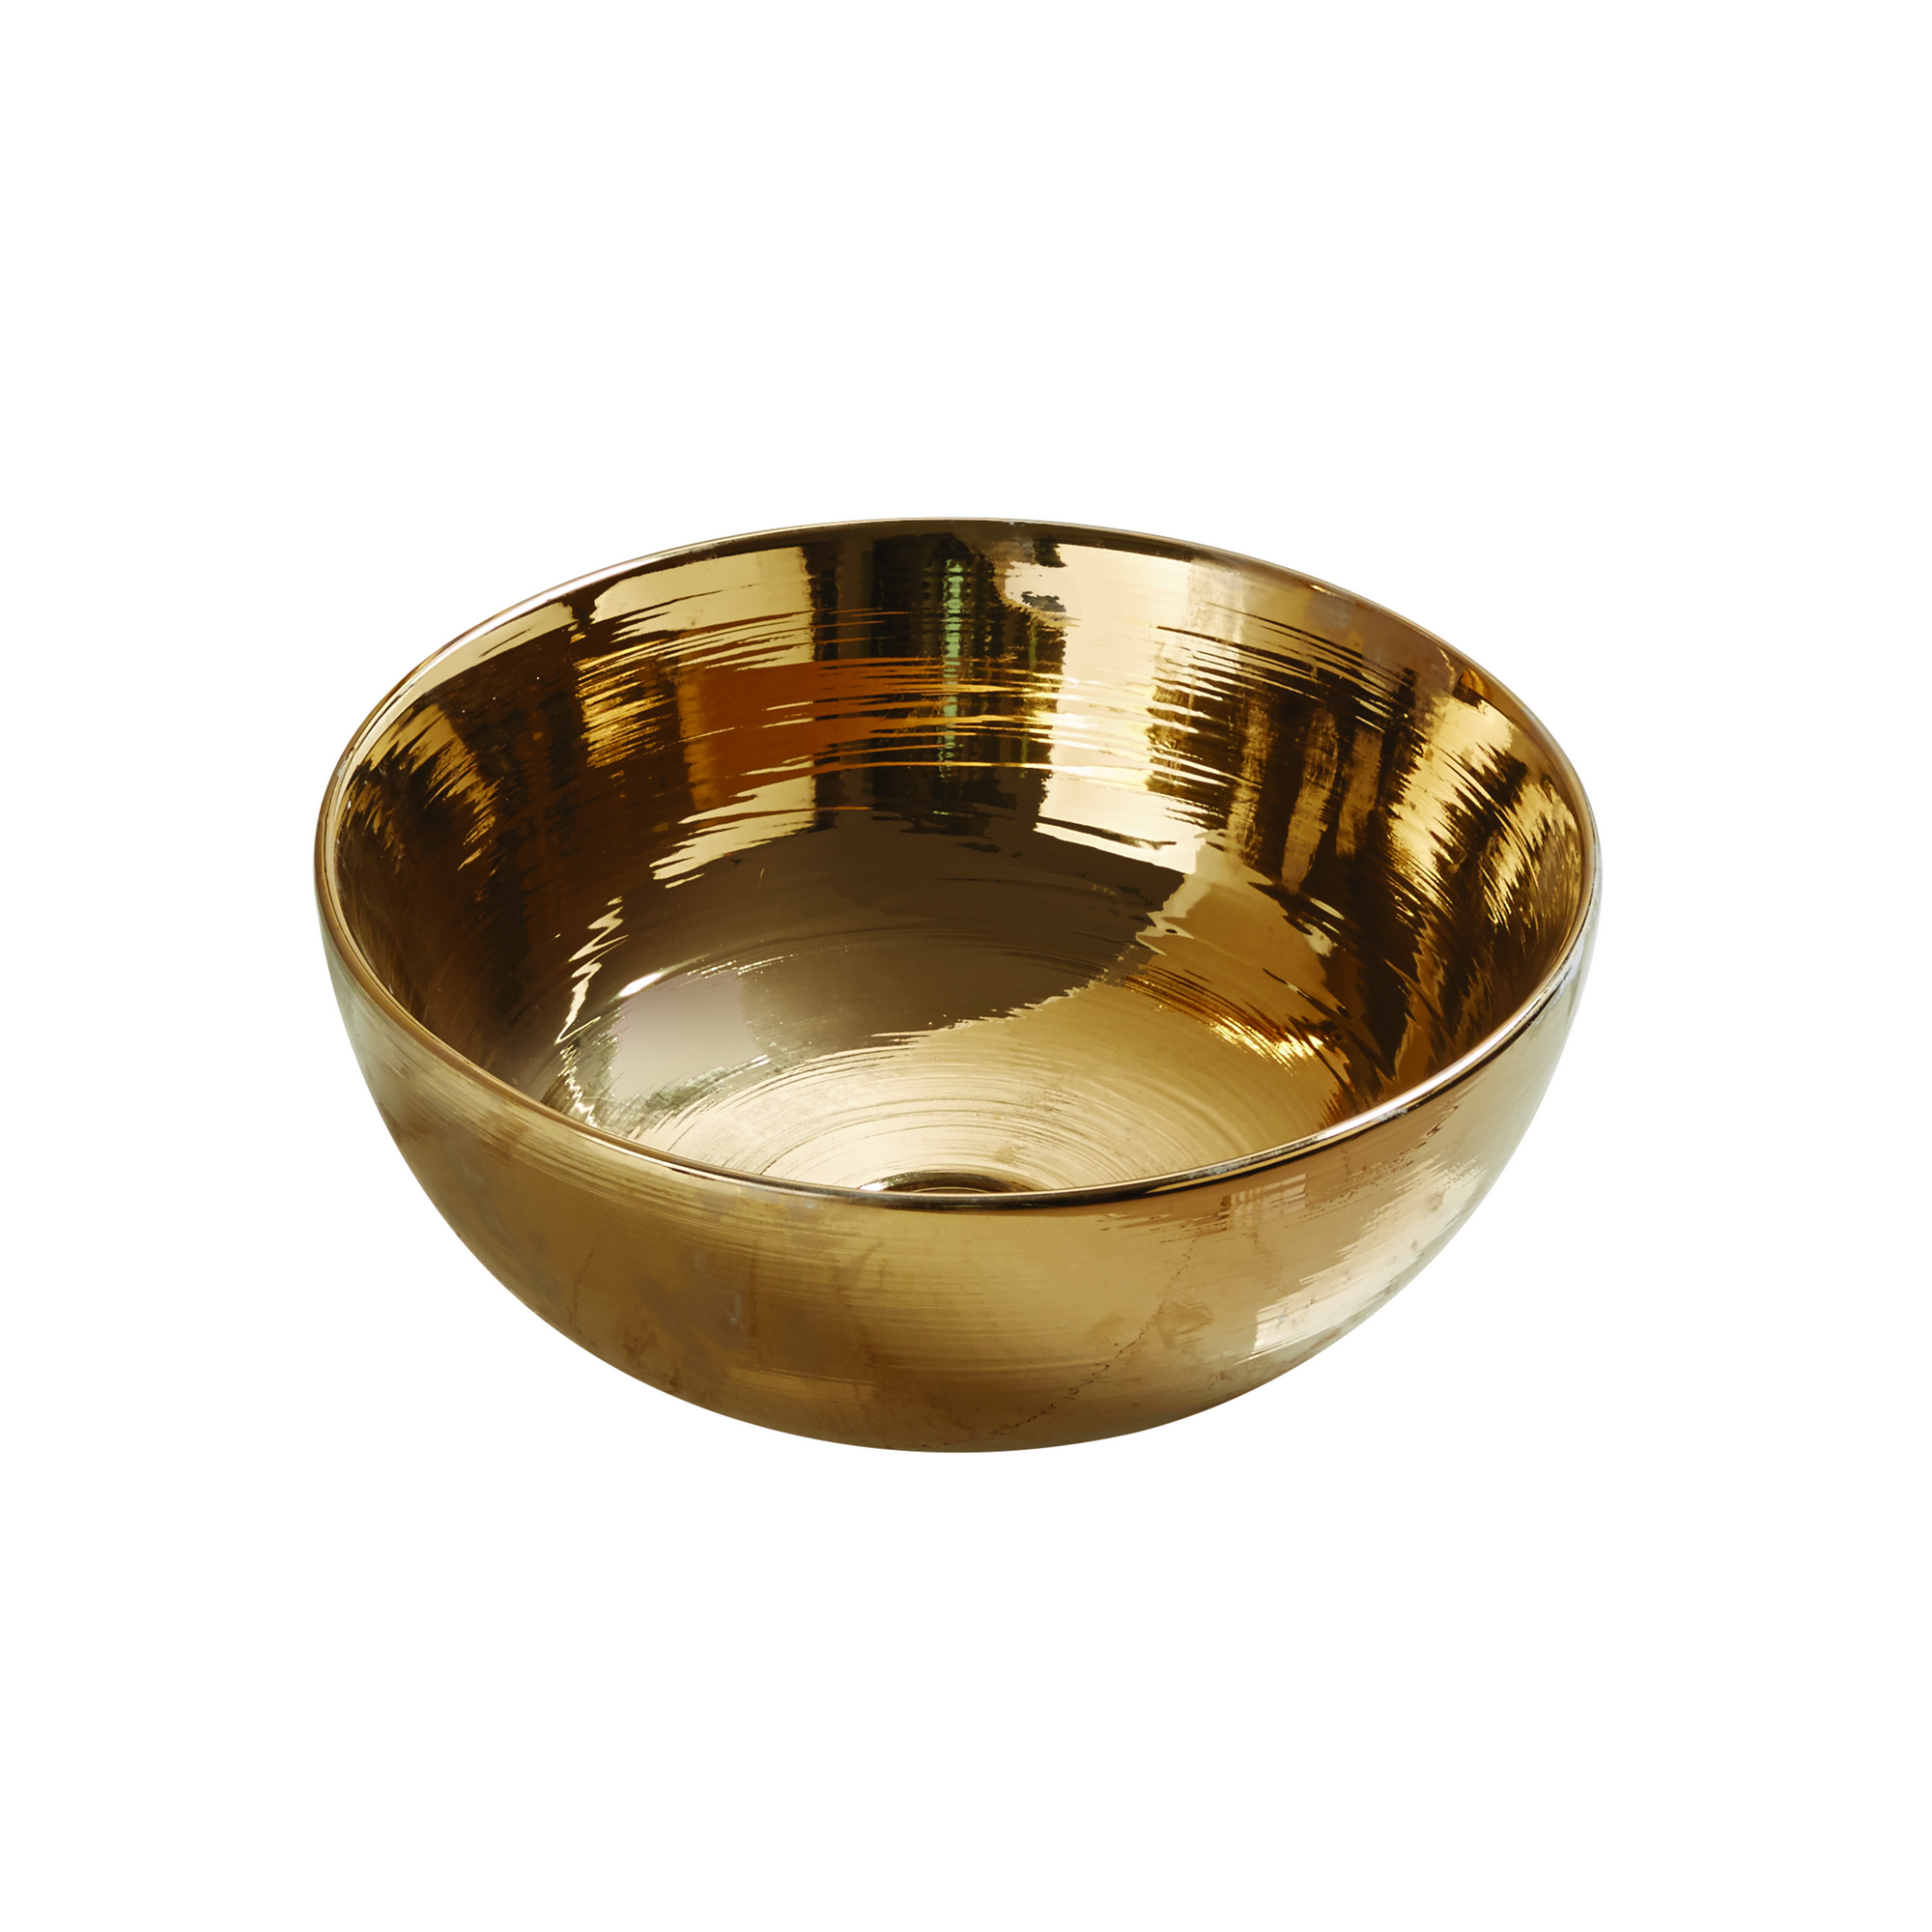 Aufsatzwaschtisch 'Osiris' Keramik glänzend golden Ø 35,8 cm + product picture